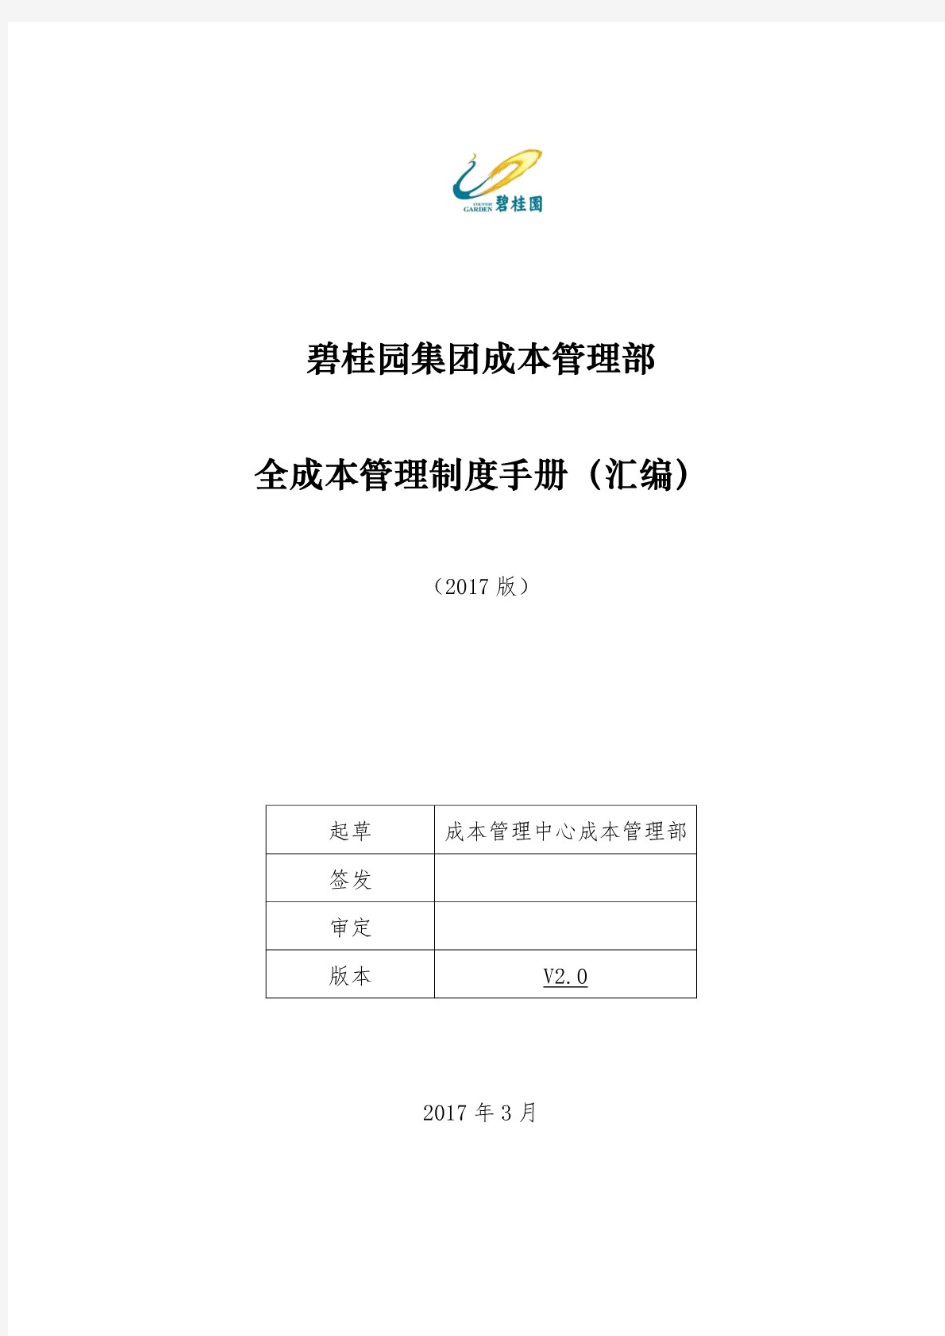 碧桂园集团成本管理部全成本管理制度手册V2.0.pdf